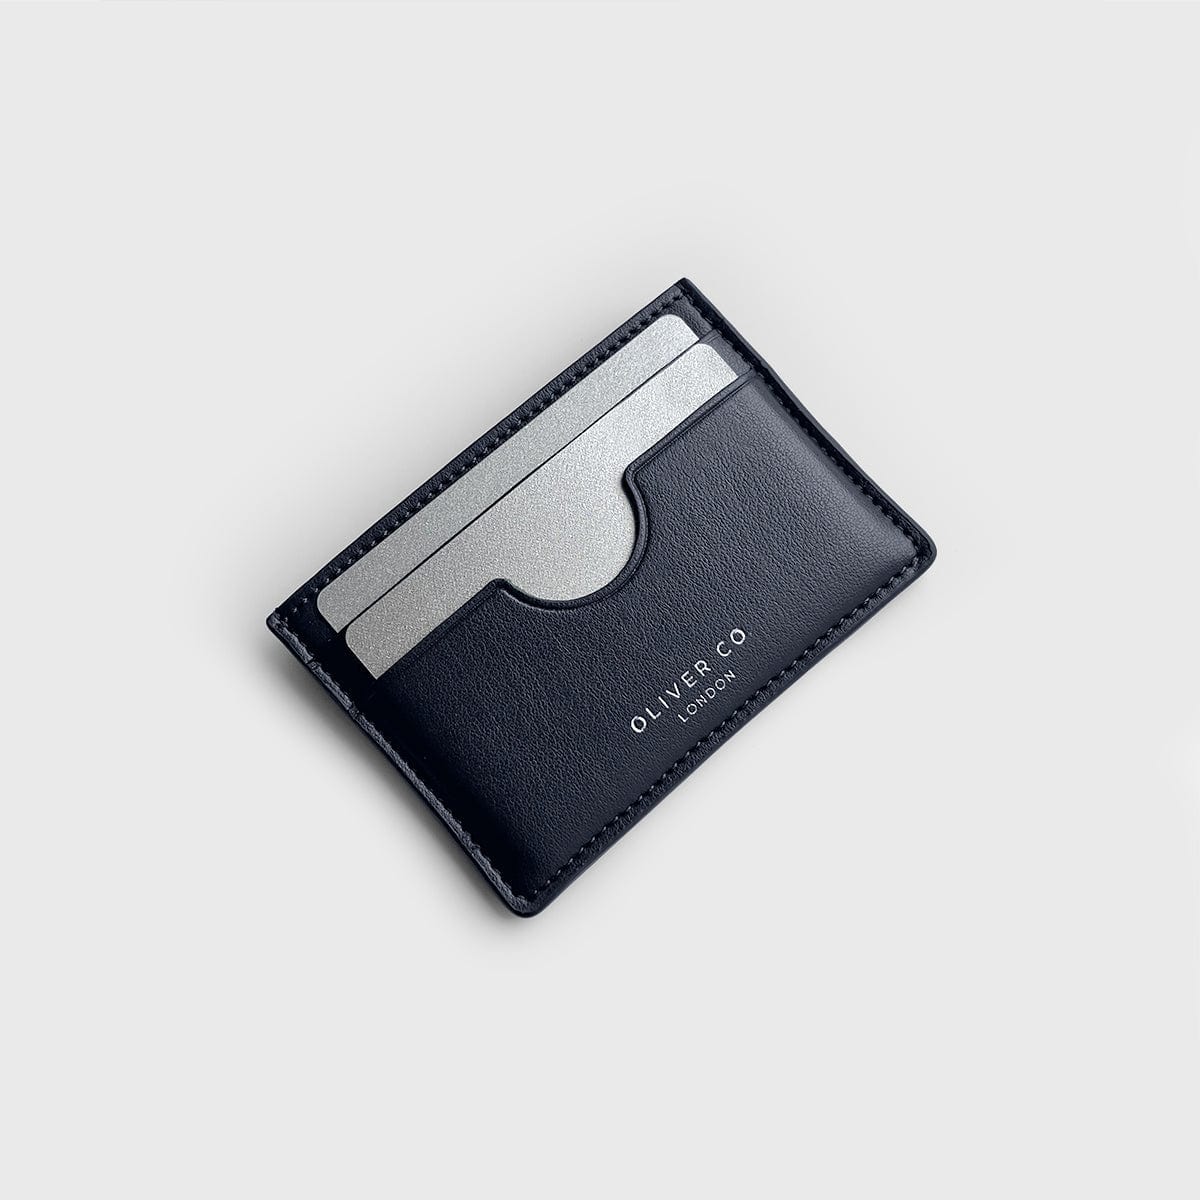 Oliver Co. London Premium Slim Card Holder (Black Camo / No) Black Camo / No